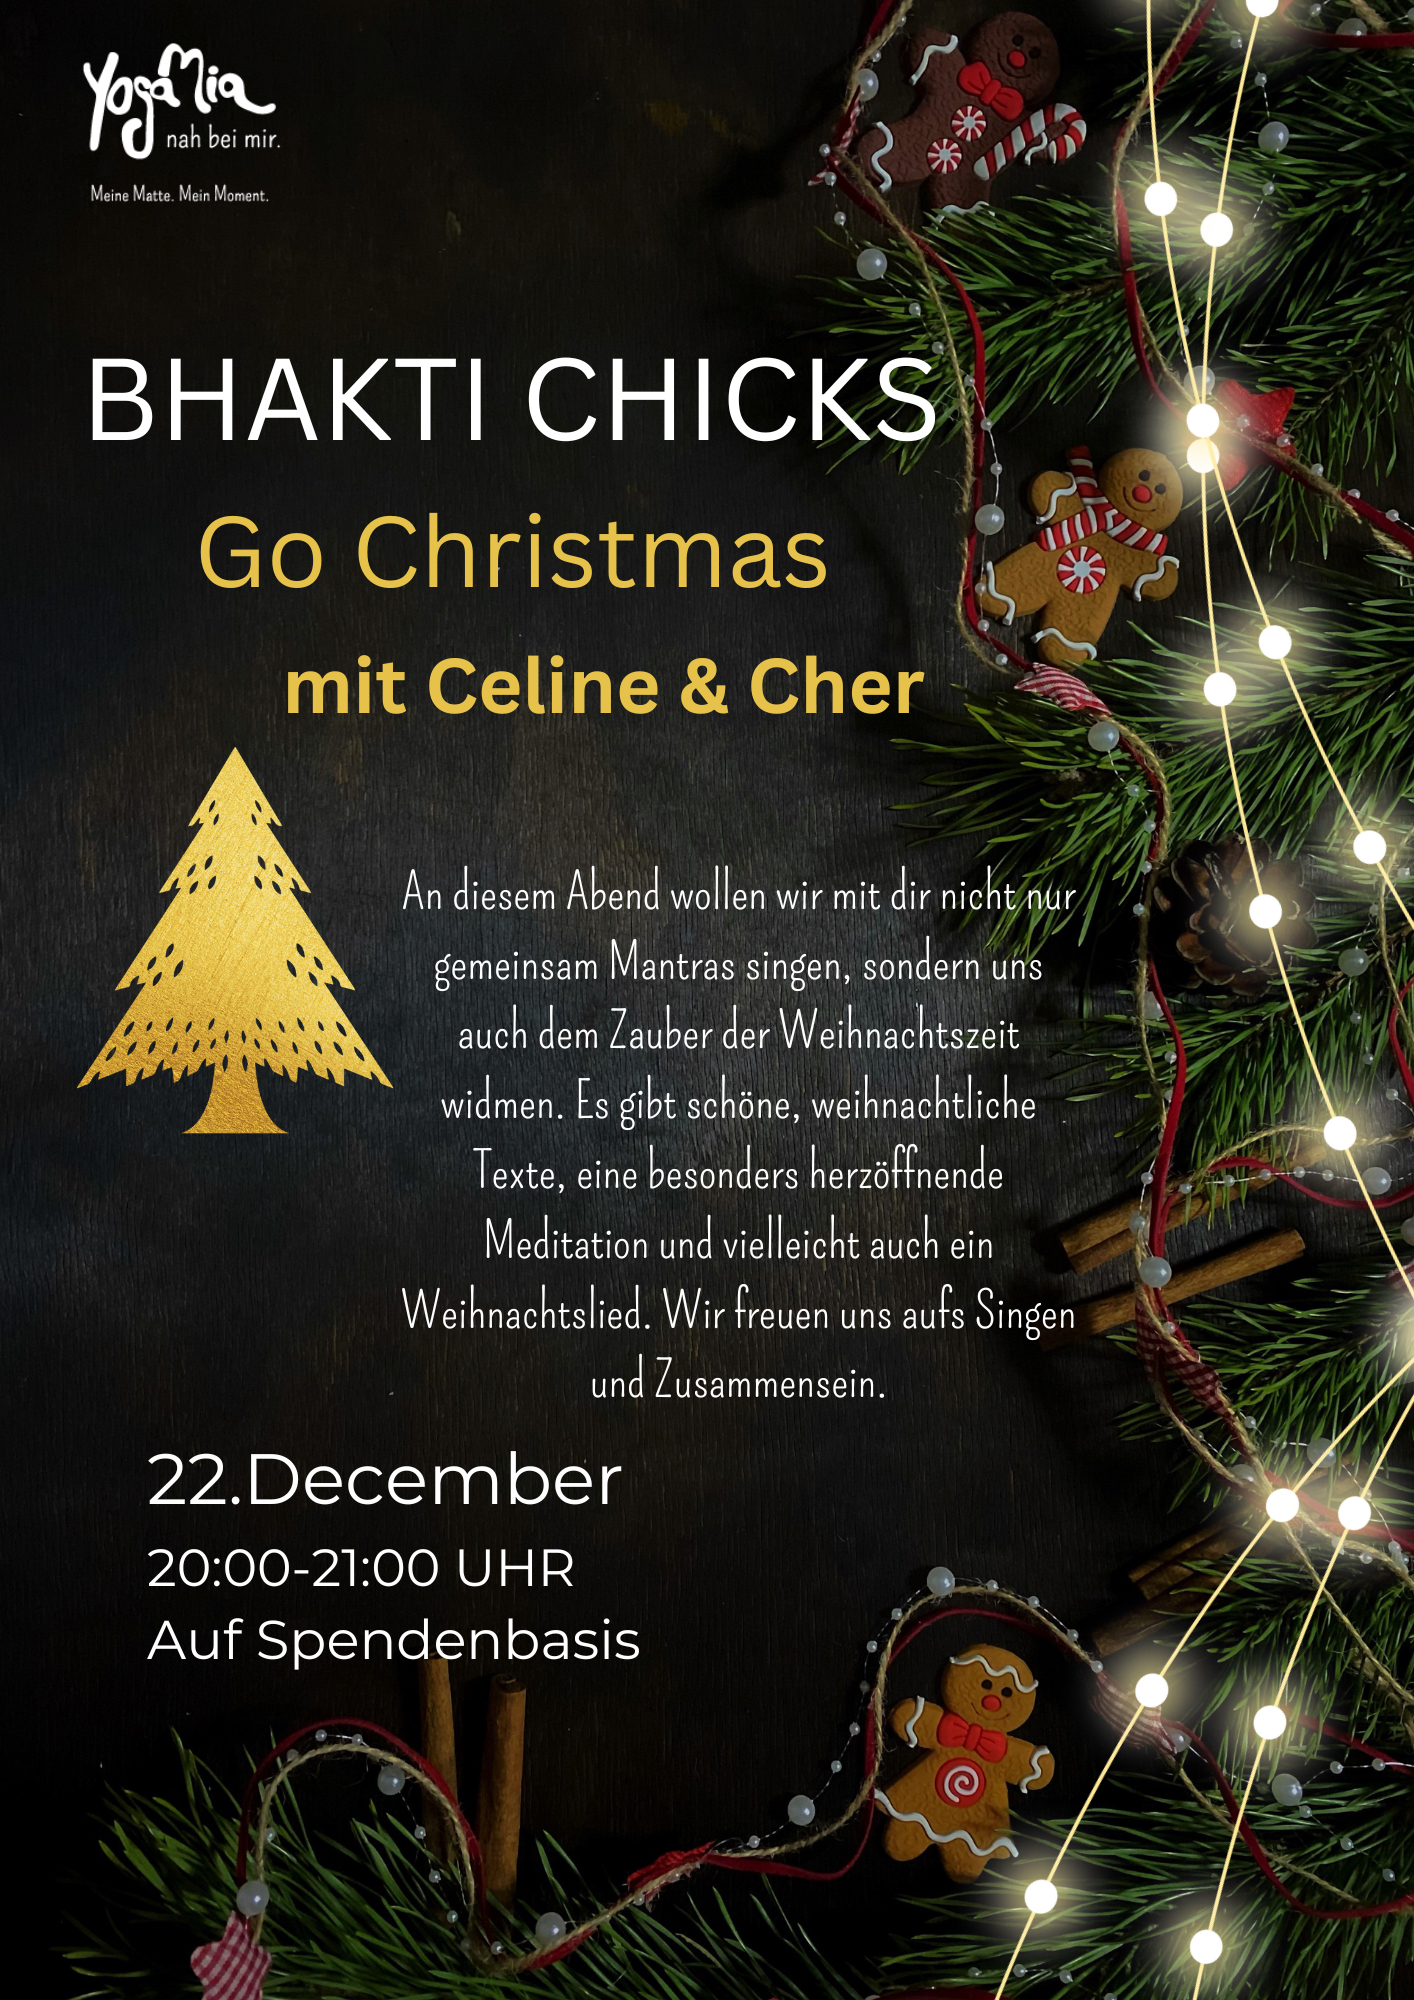 Bhakti Chicks go Christmas